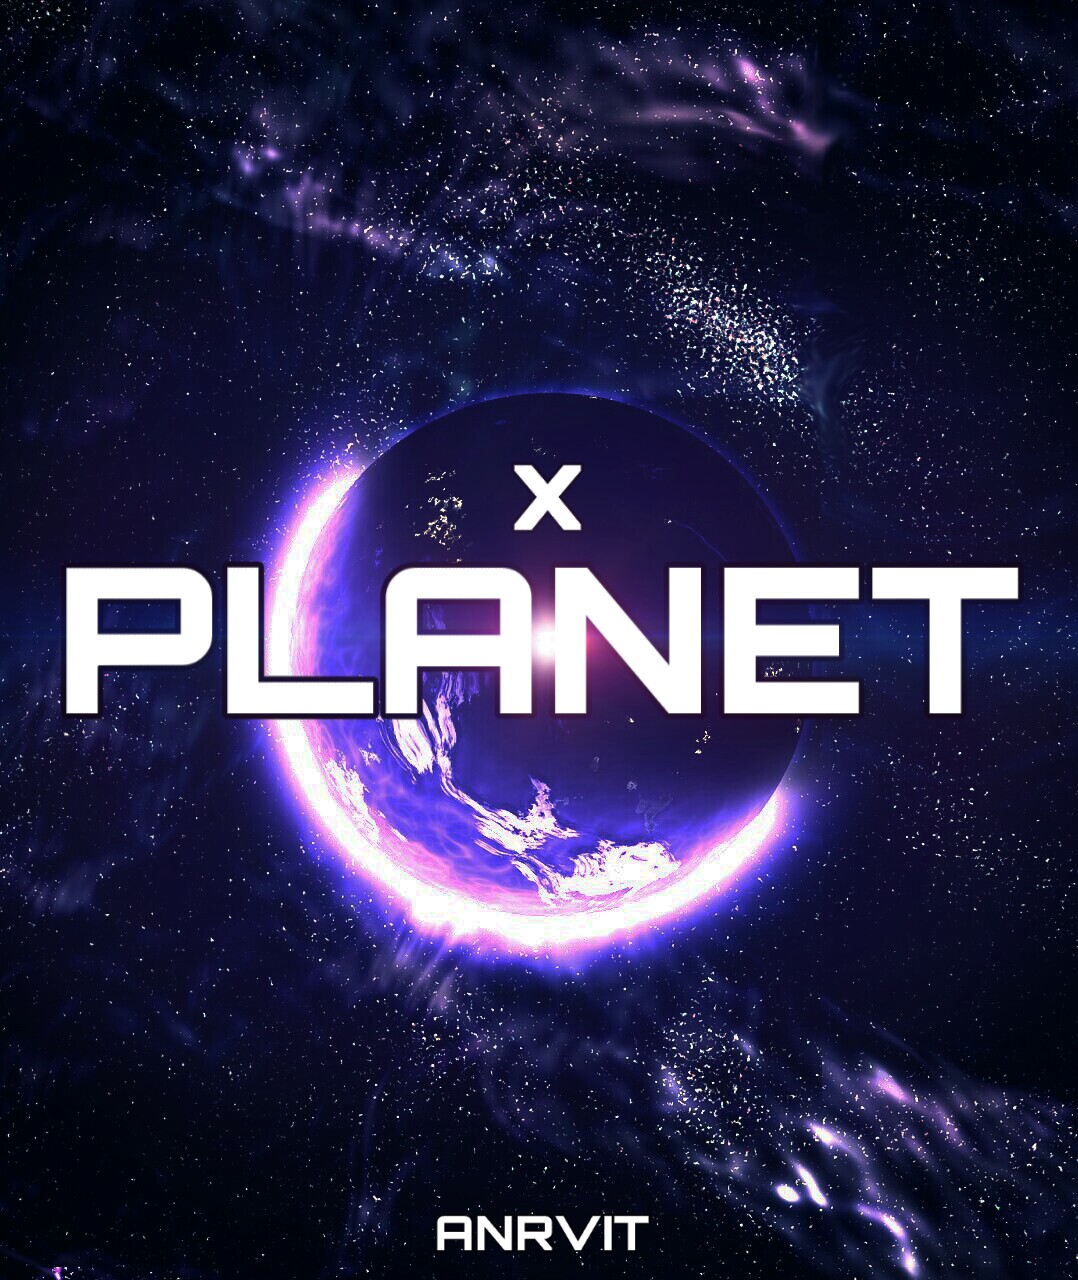 Mix planet. PLANETX. Planet x.